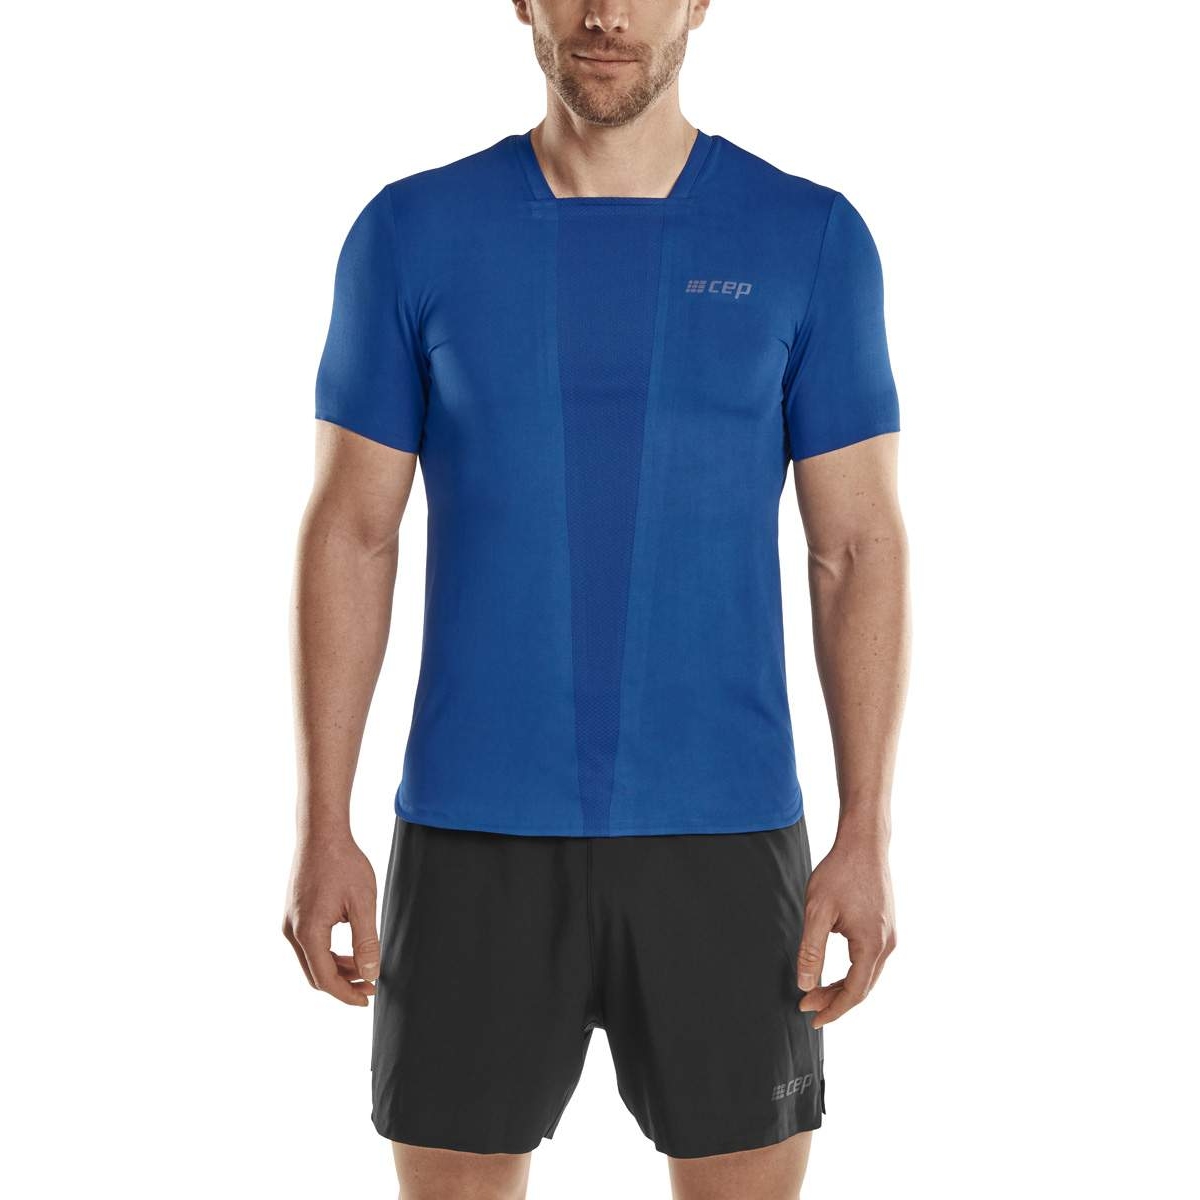 Productfoto van CEP The Run T-Shirt Heren - blauw